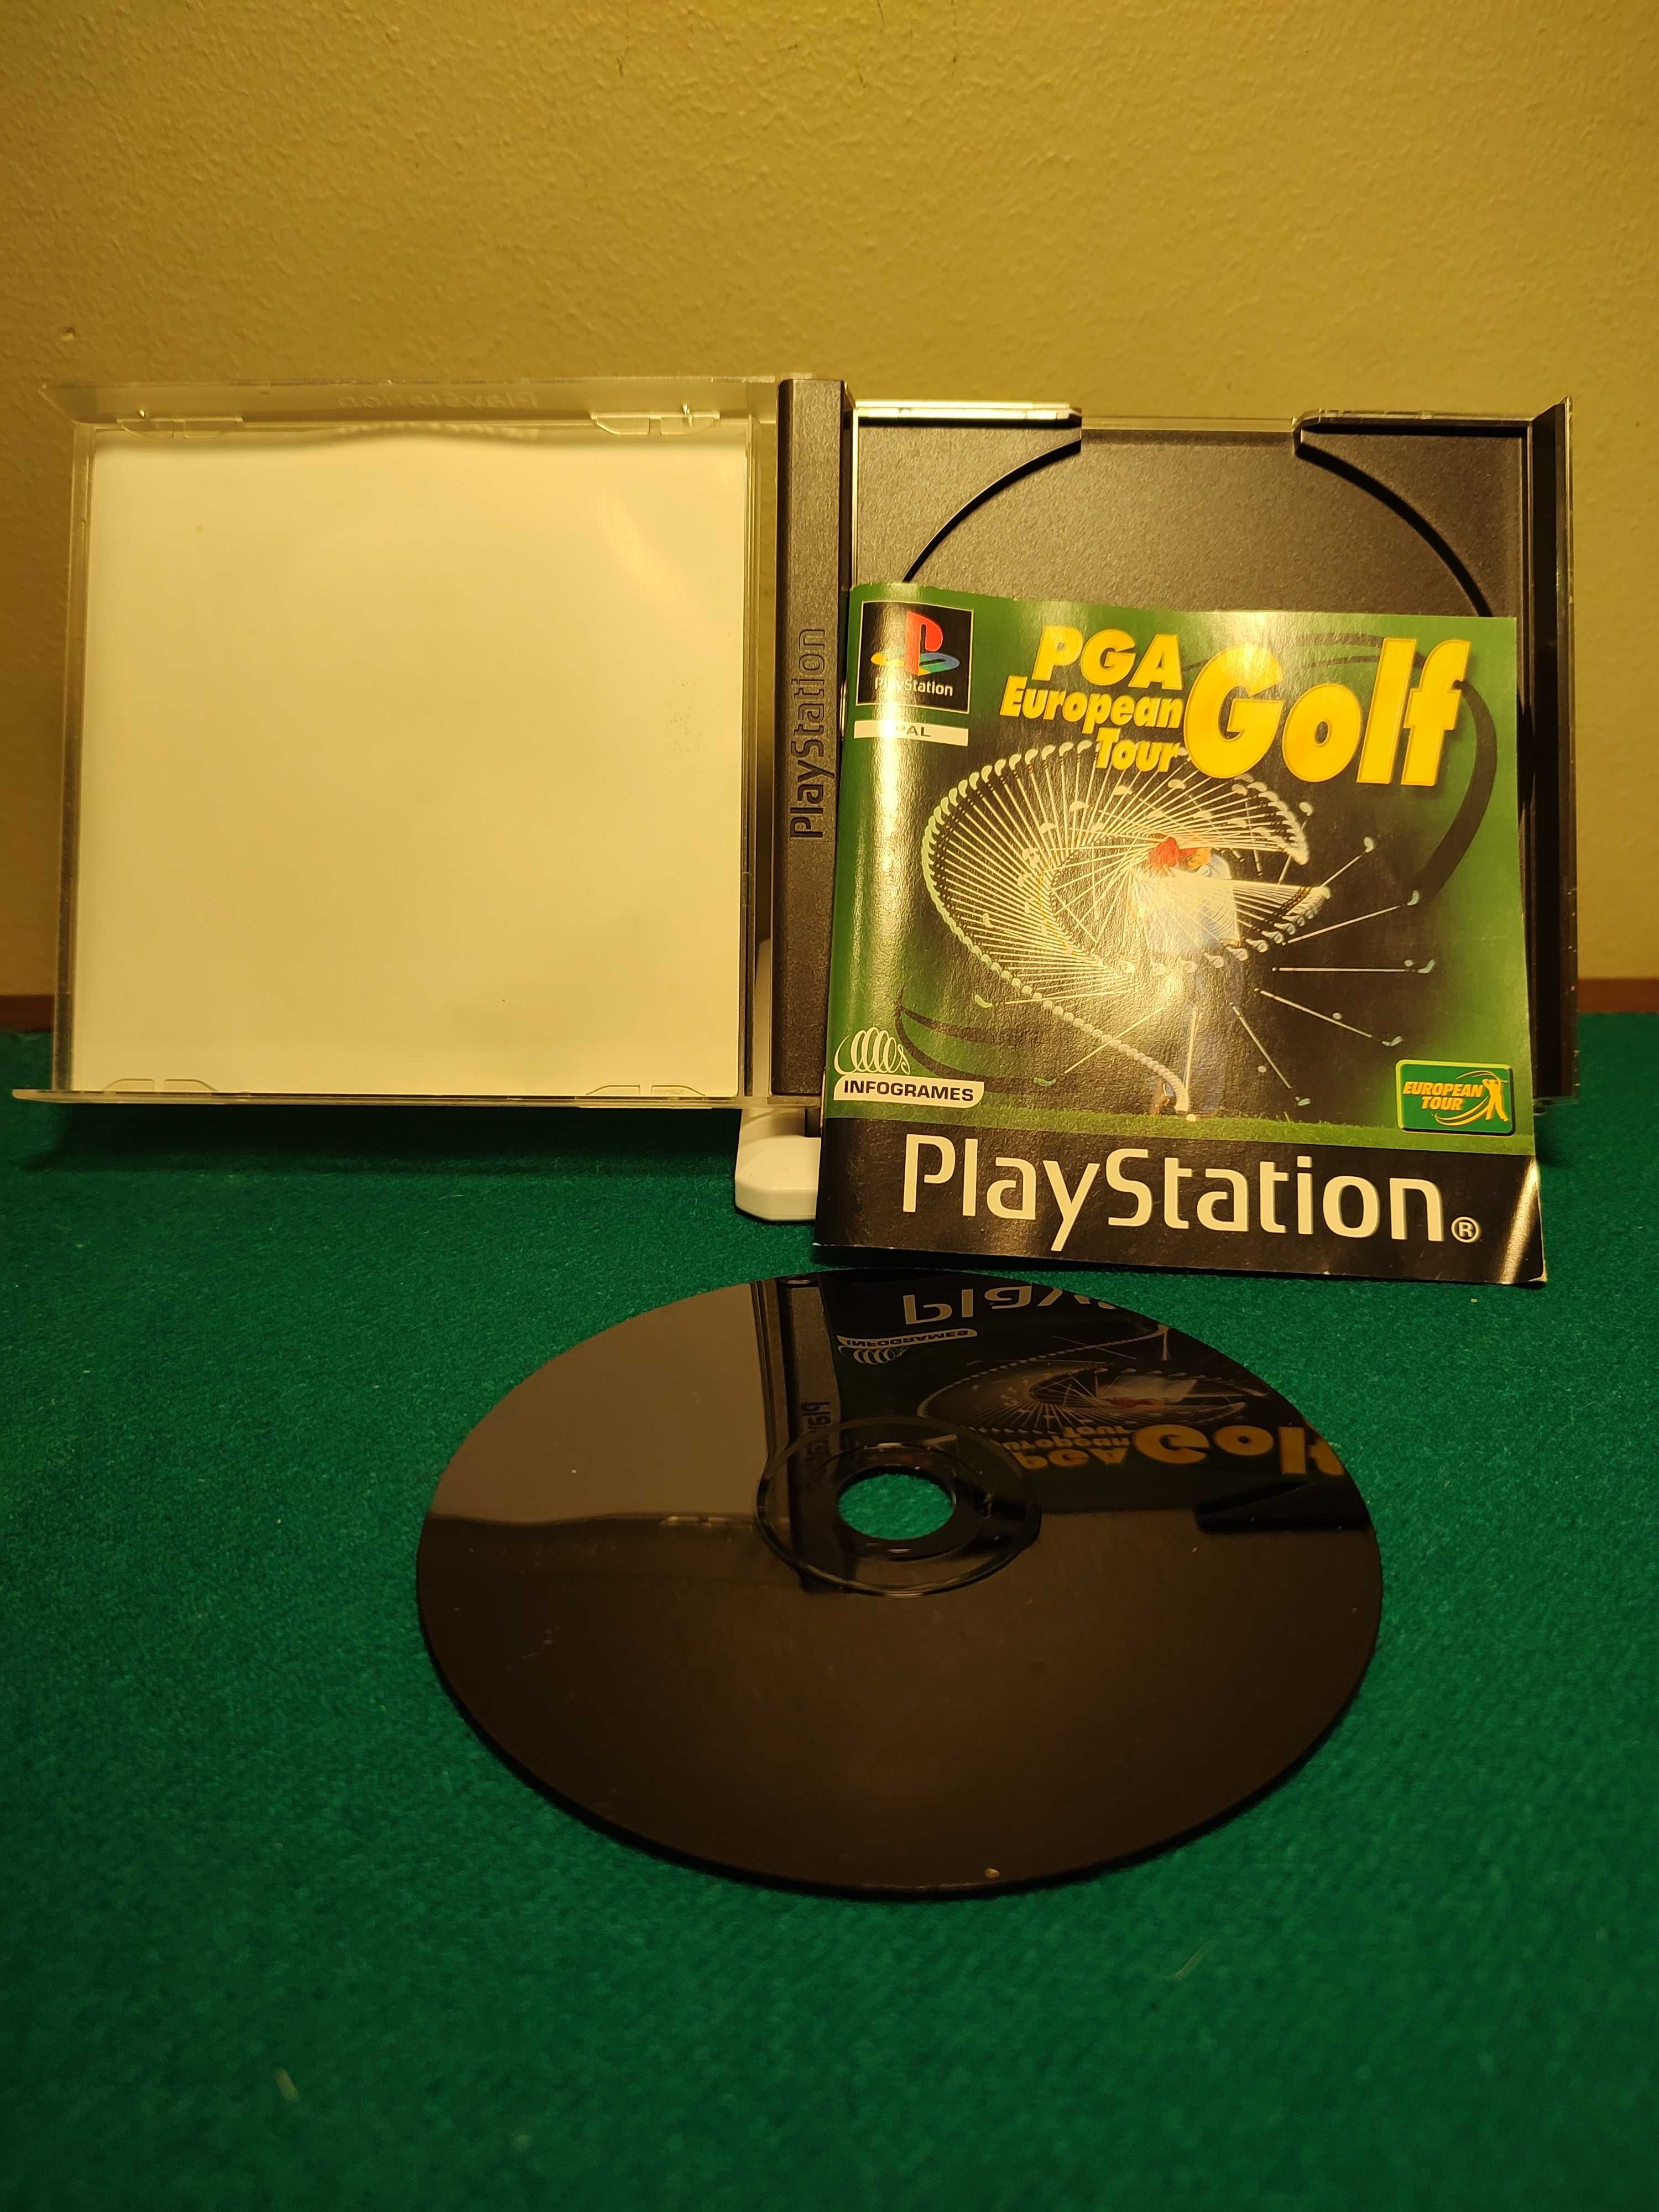 Jogo Playstation 1 PGA European Tour Golf